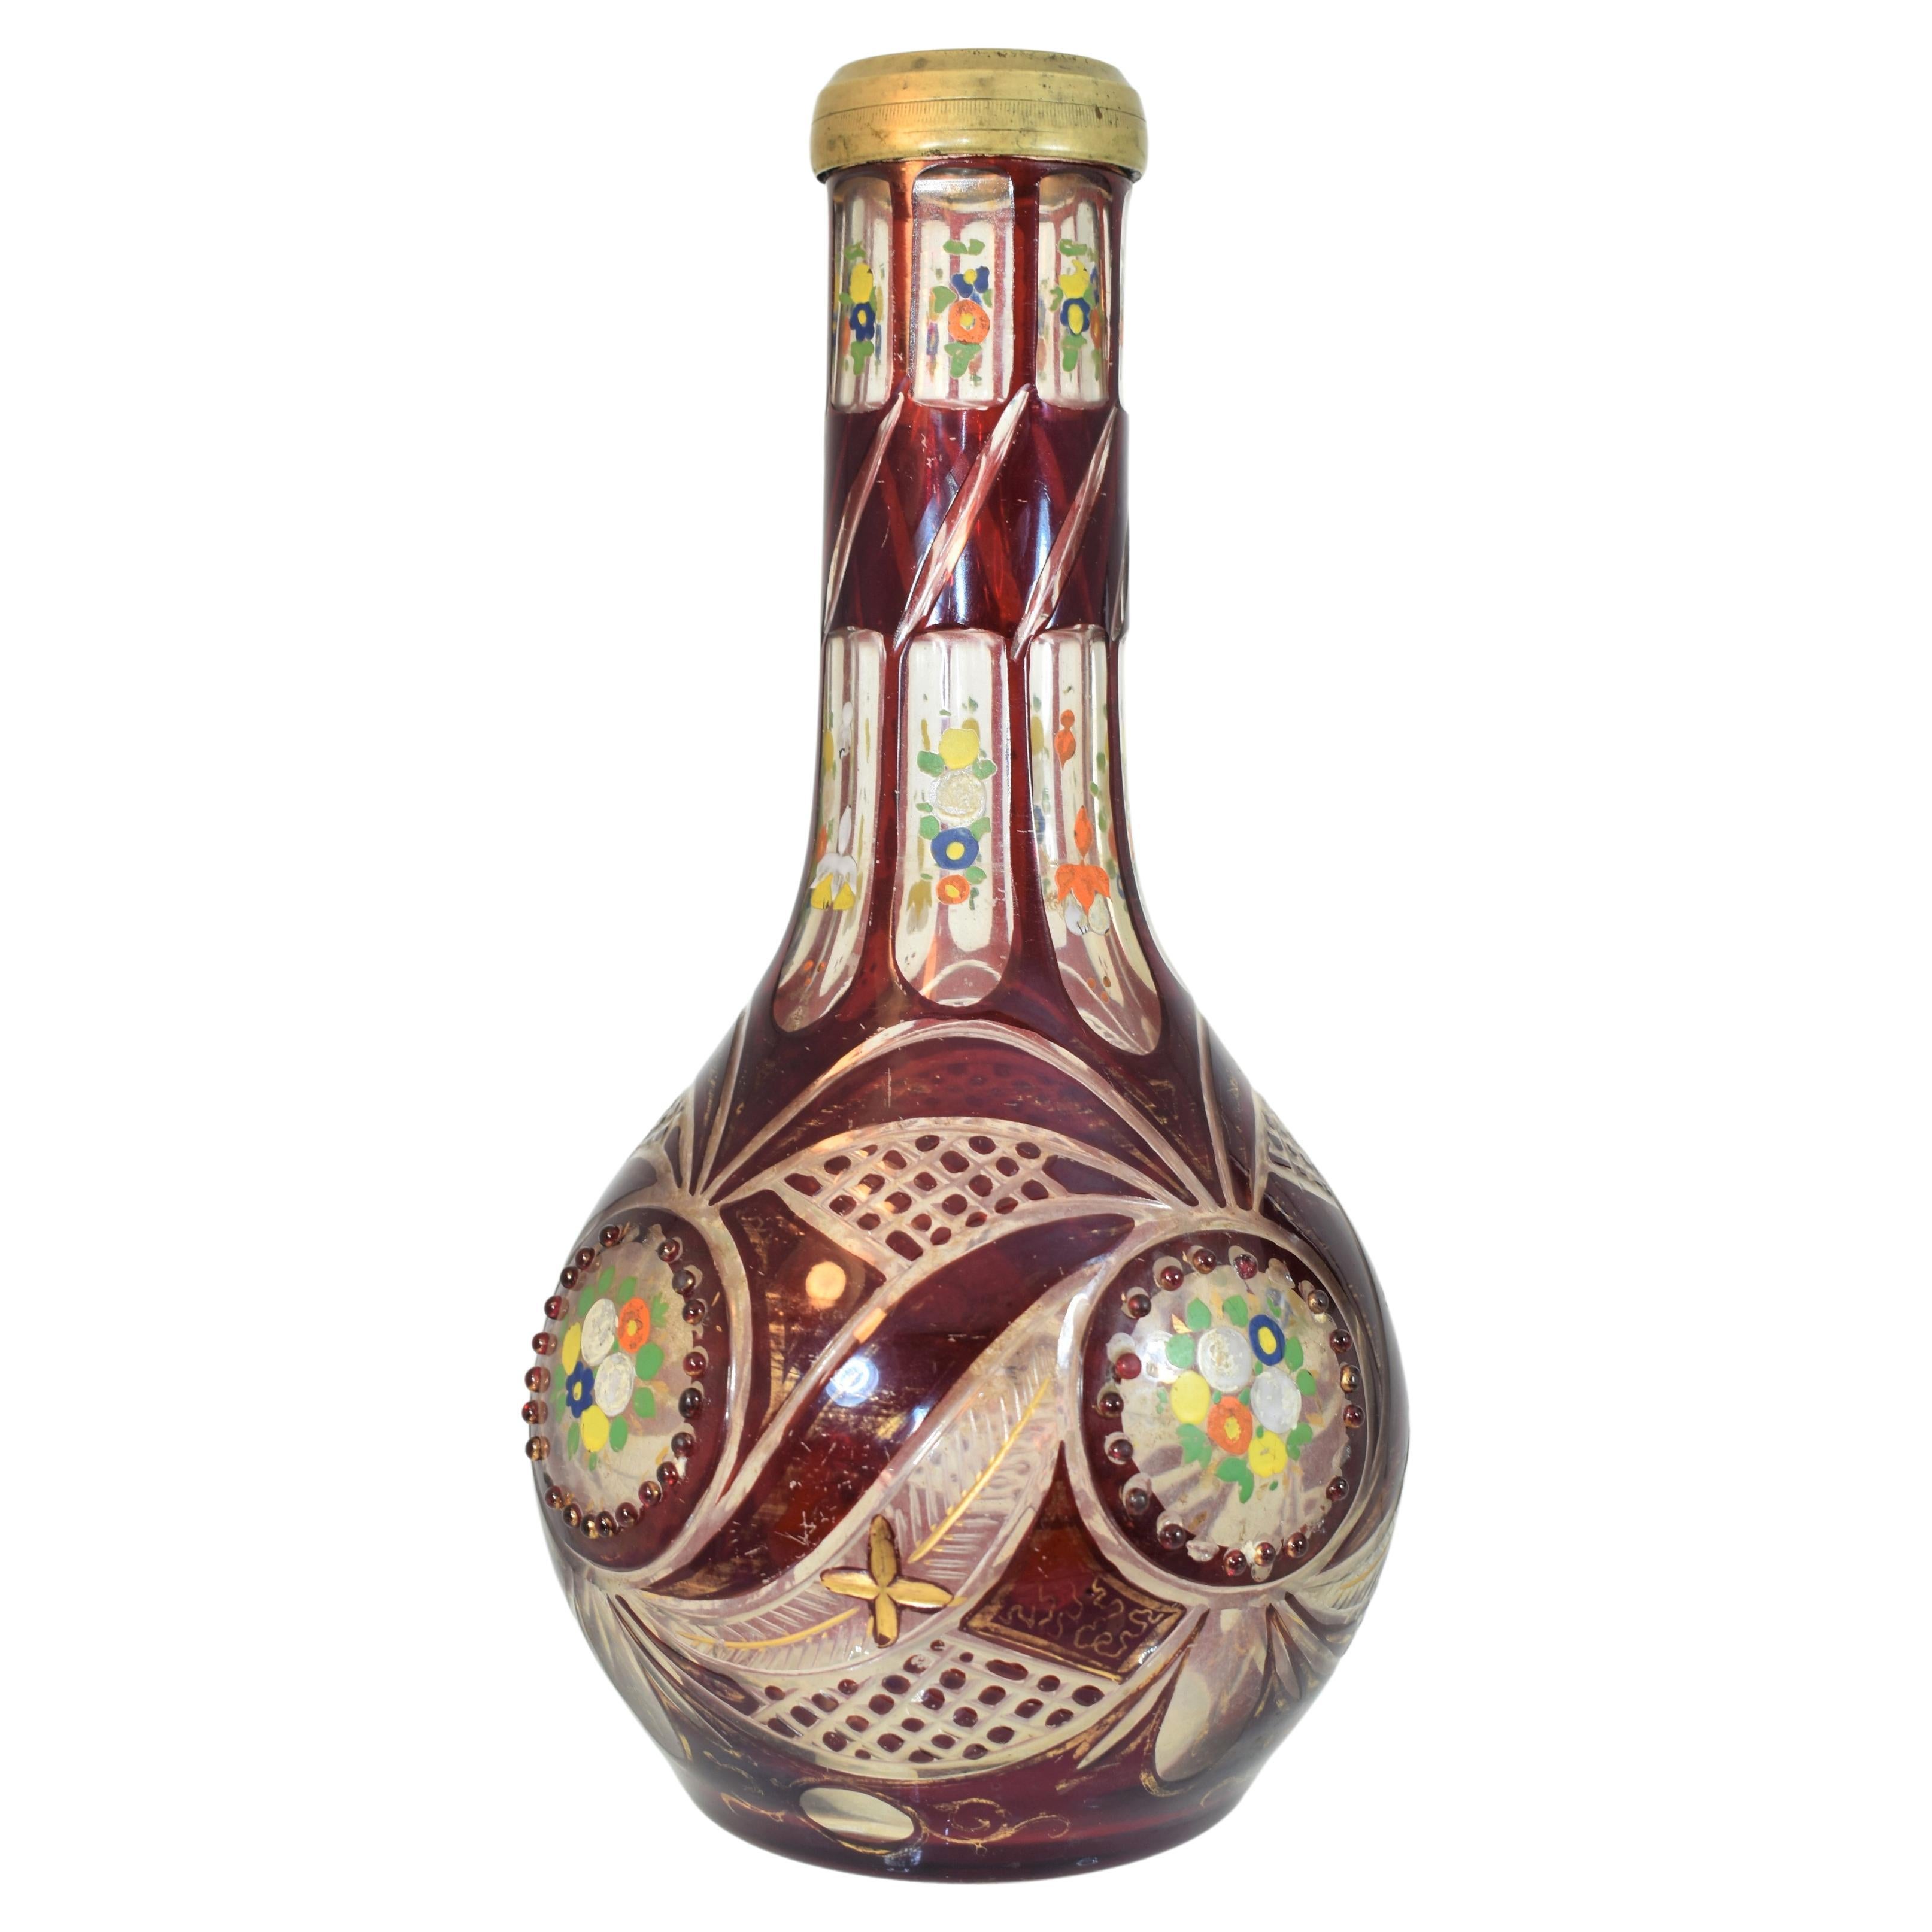 Une belle base de narguilé en rubis, recouverte de verre taillé.
décorée de bijoux et d'émail doré.
Bohemia, 19ème siècle, produit pour le marché islamique.